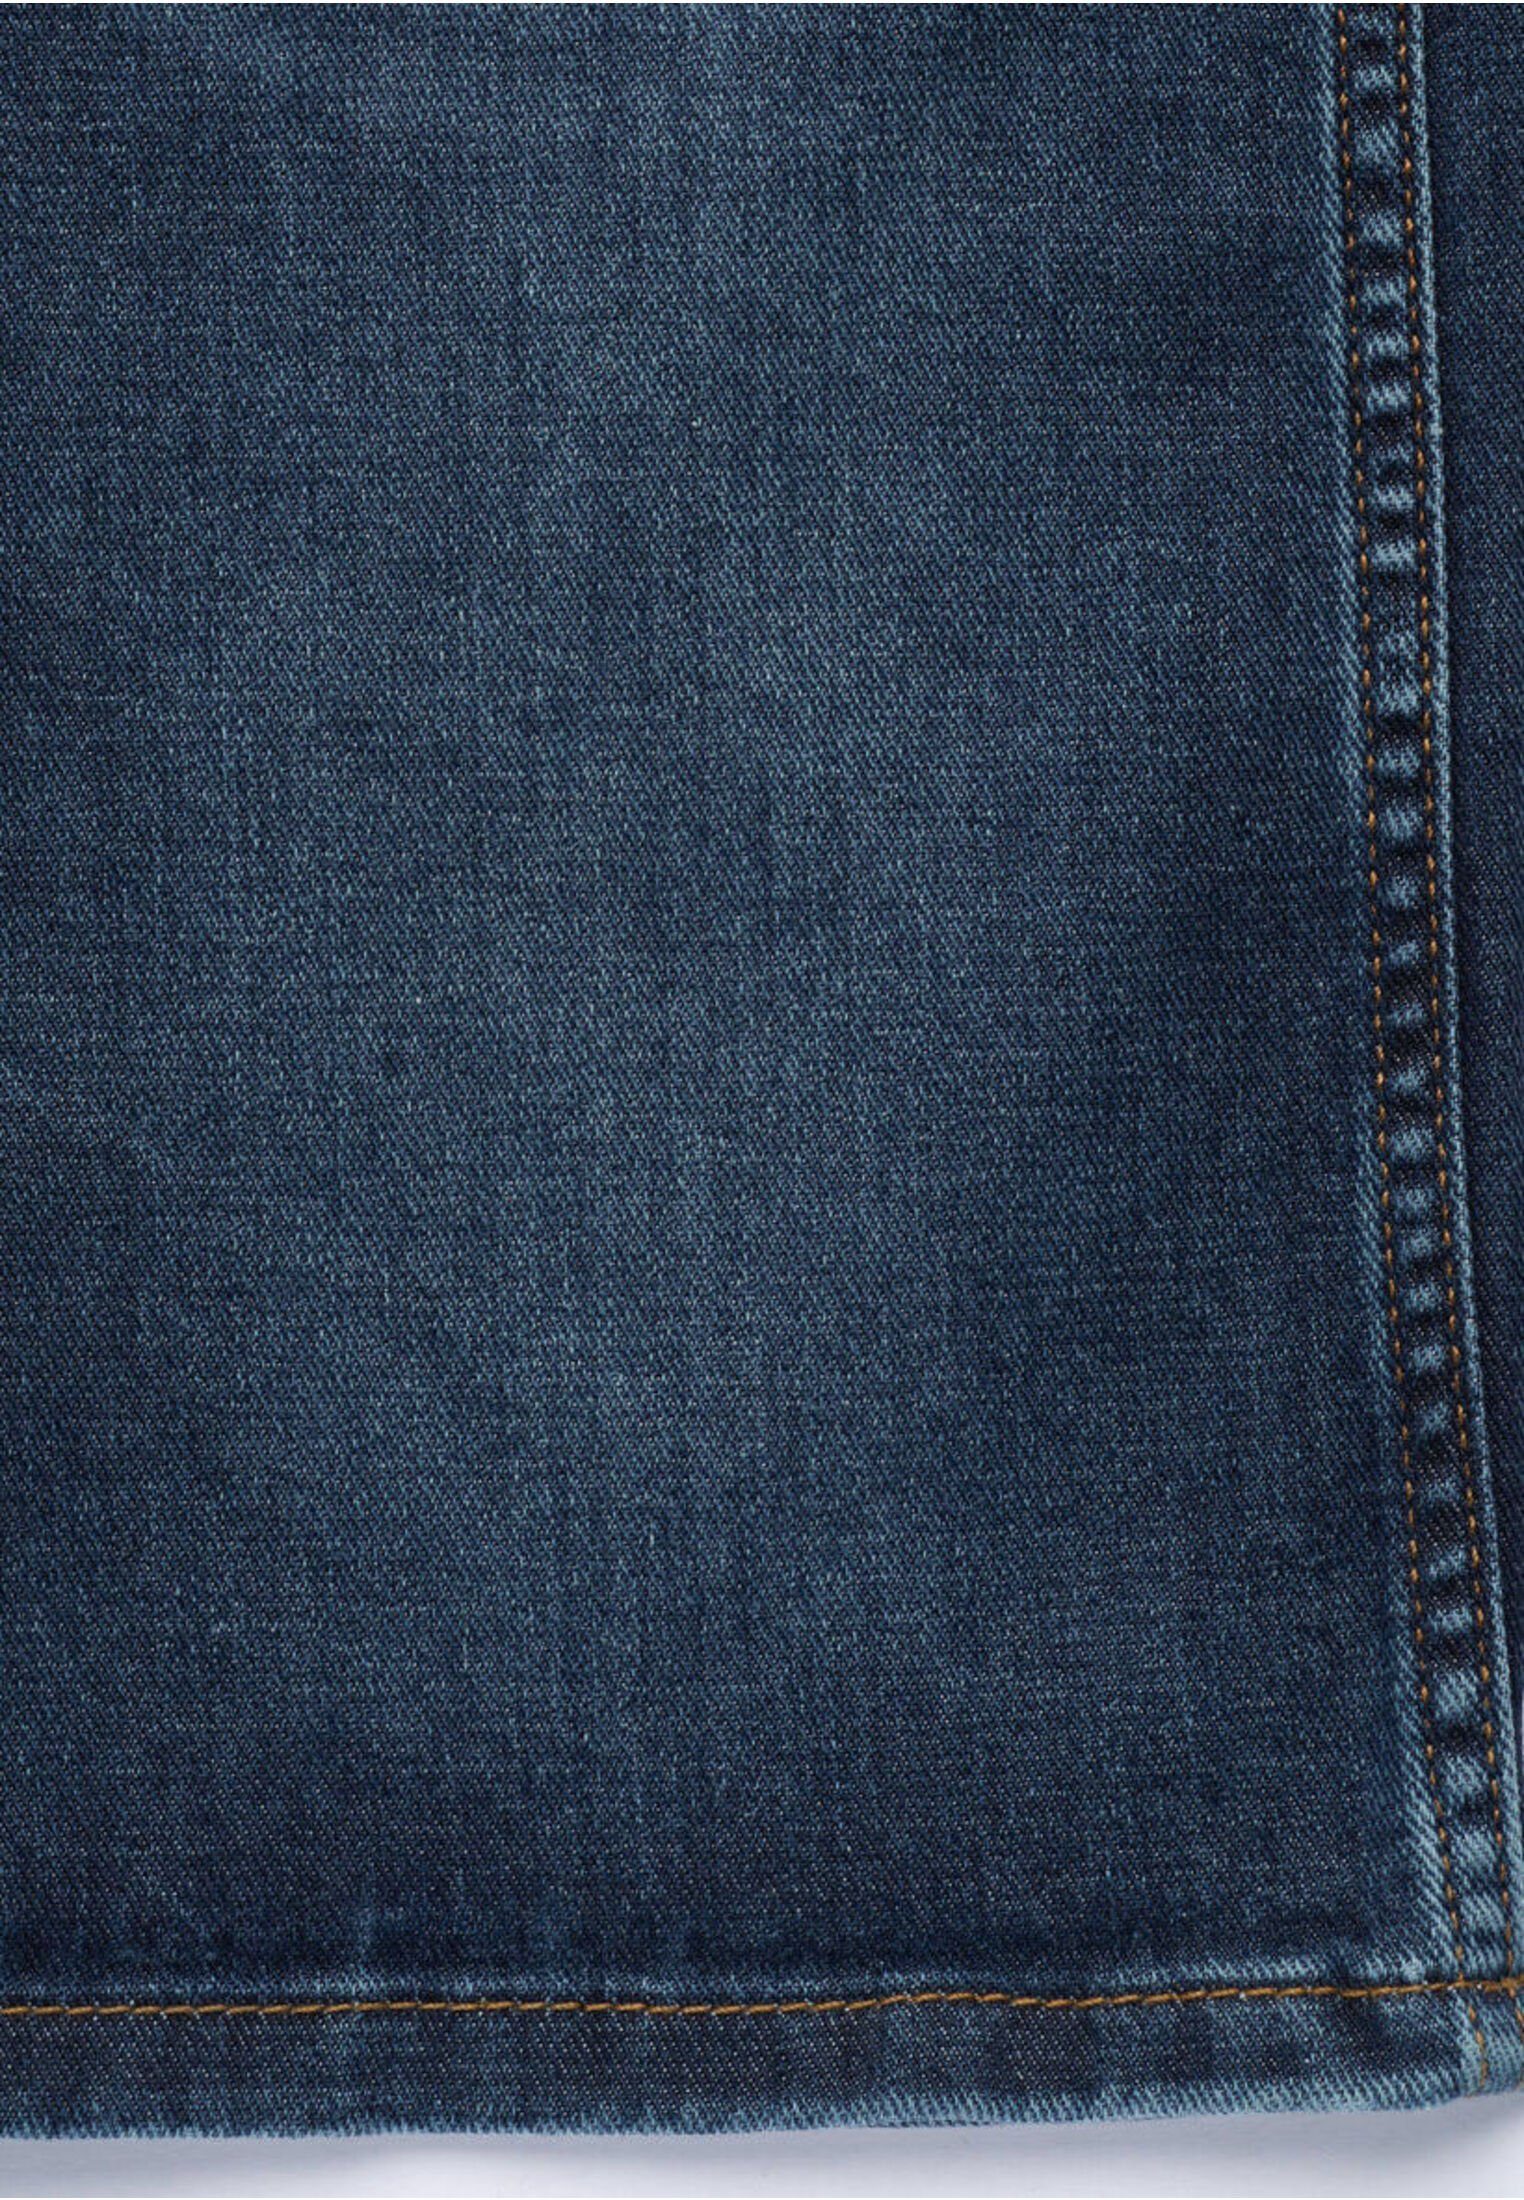 Haptik mit 5-Pocket-Jeans weicher blau besonders bugatti